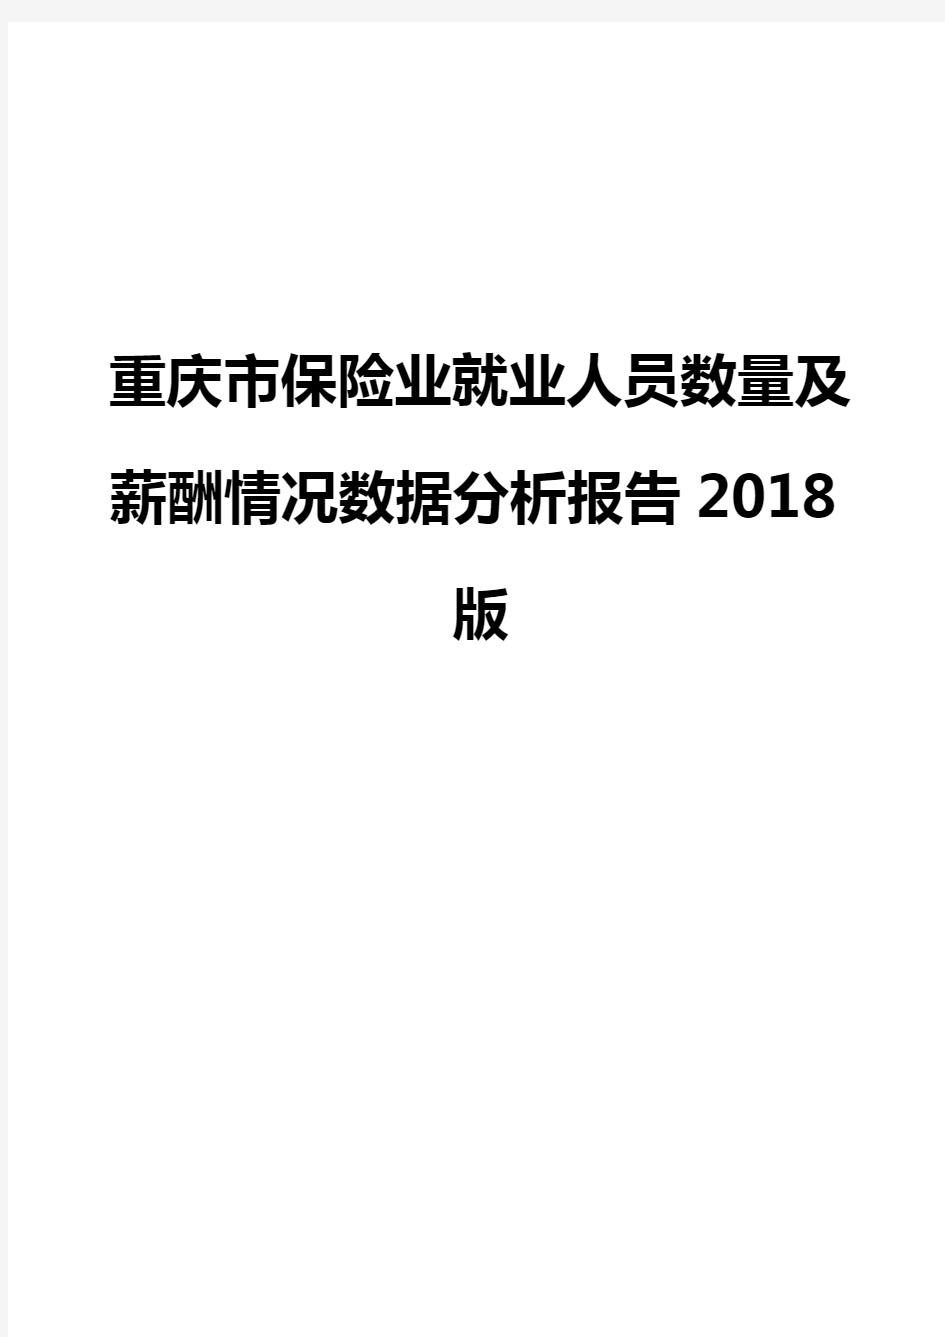 重庆市保险业就业人员数量及薪酬情况数据分析报告2018版